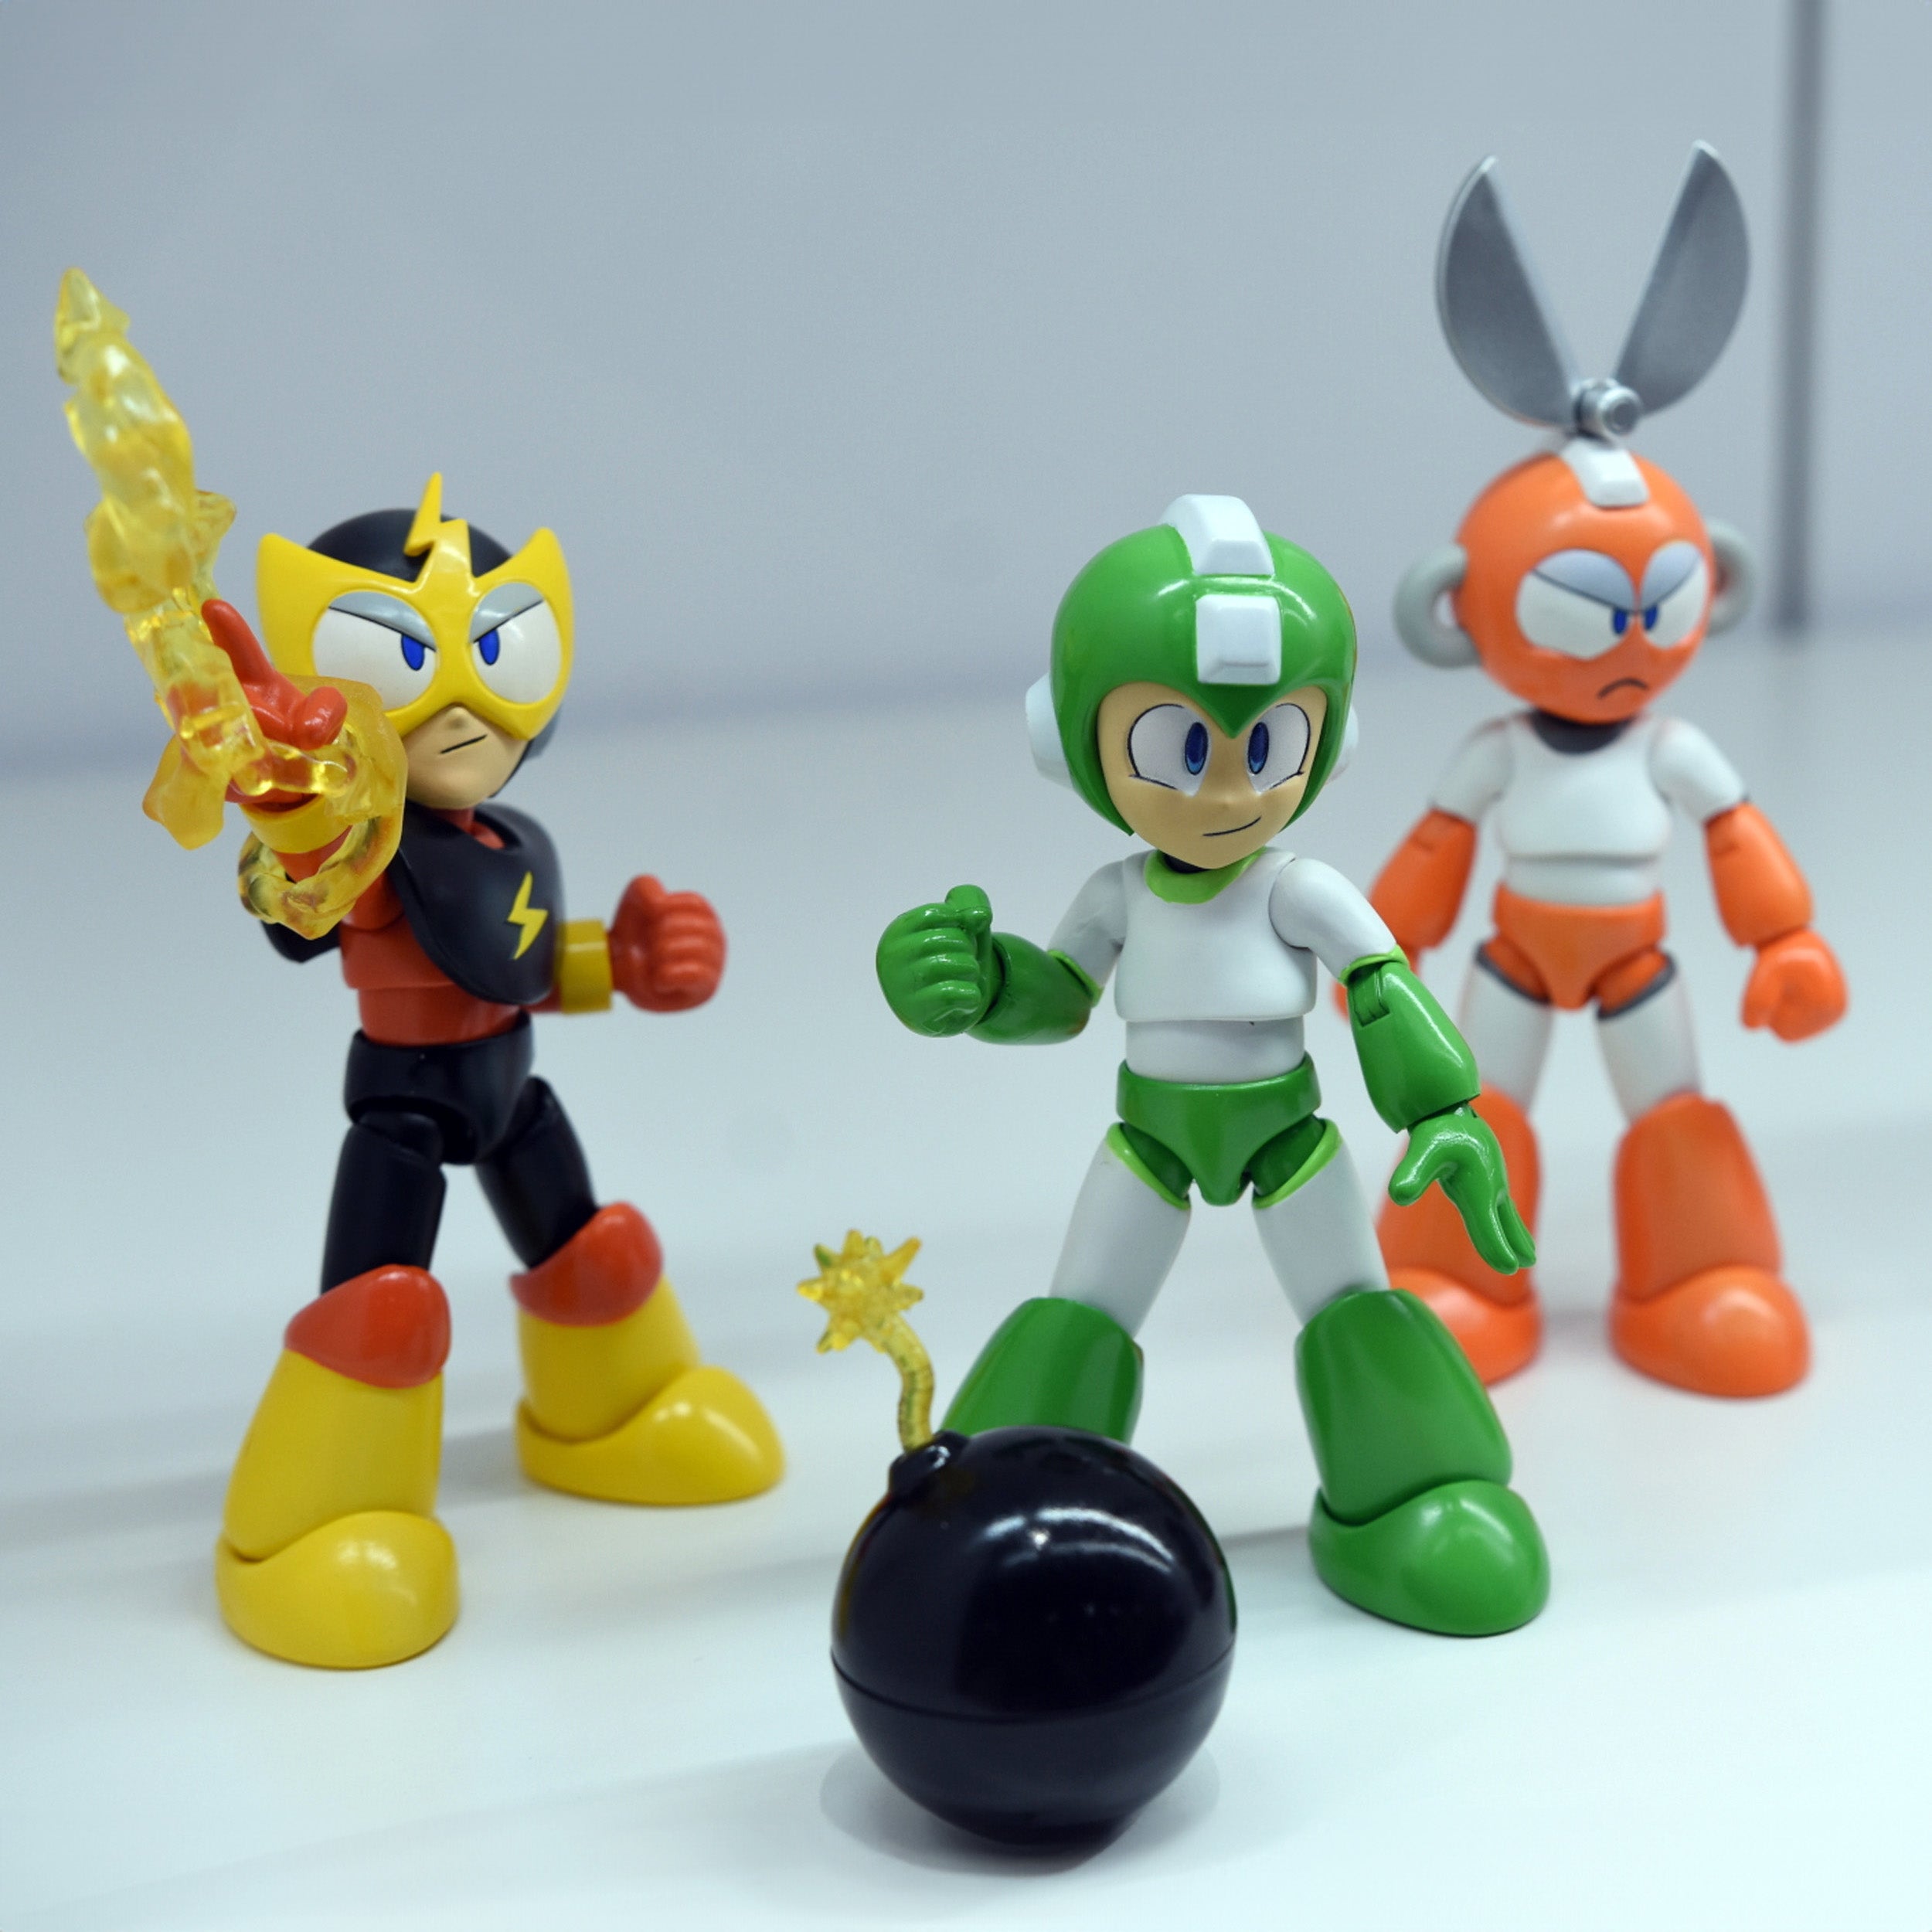 Jada Toys - Mega Man (Rockman) - Elec Man (4.5") - Marvelous Toys